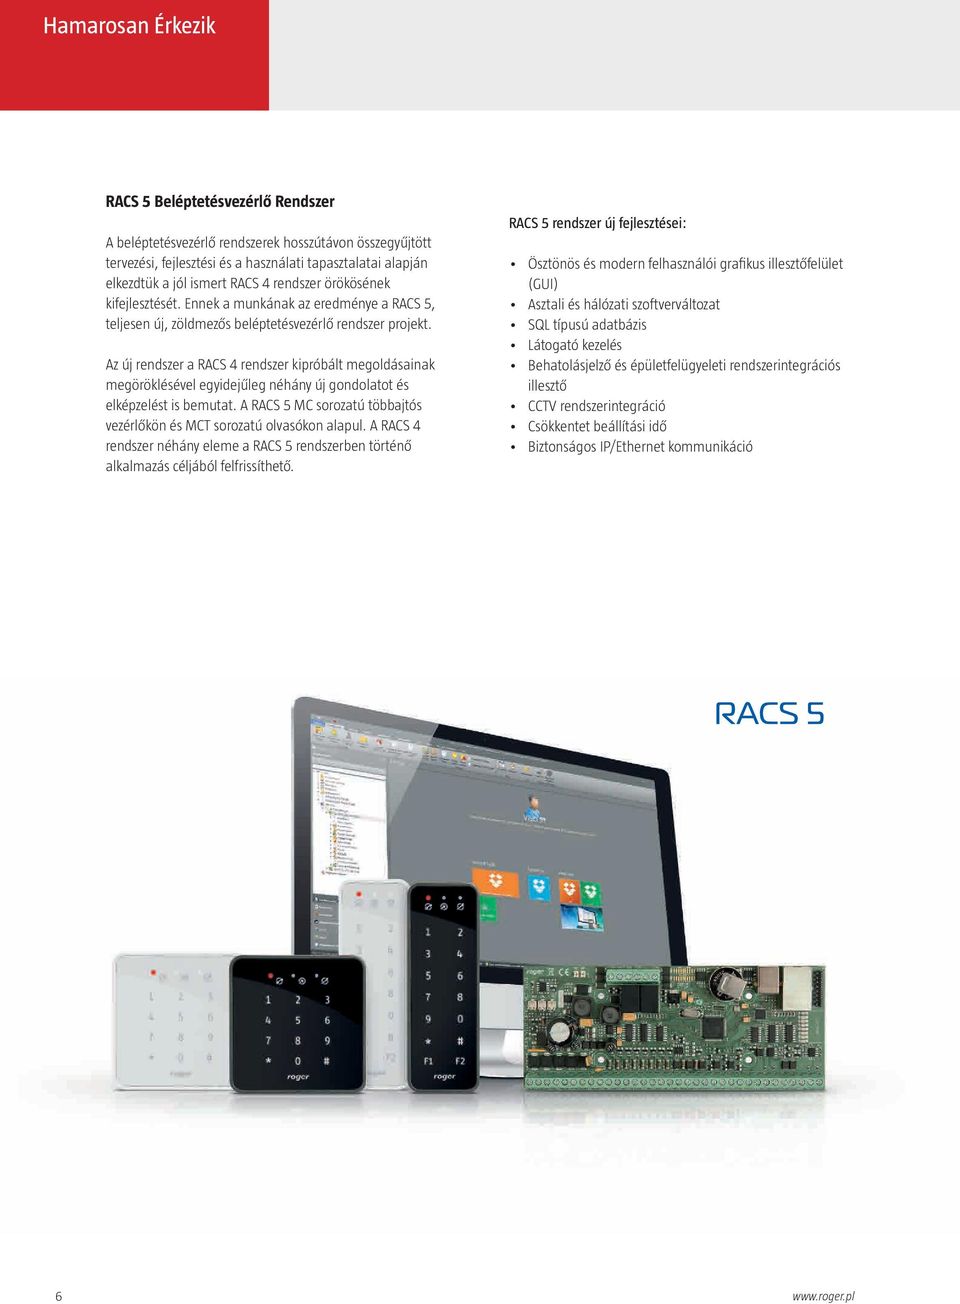 Az új rendszer a RACS 4 rendszer kipróbált megoldásainak megöröklésével egyidejűleg néhány új gondolatot és elképzelést is bemutat.